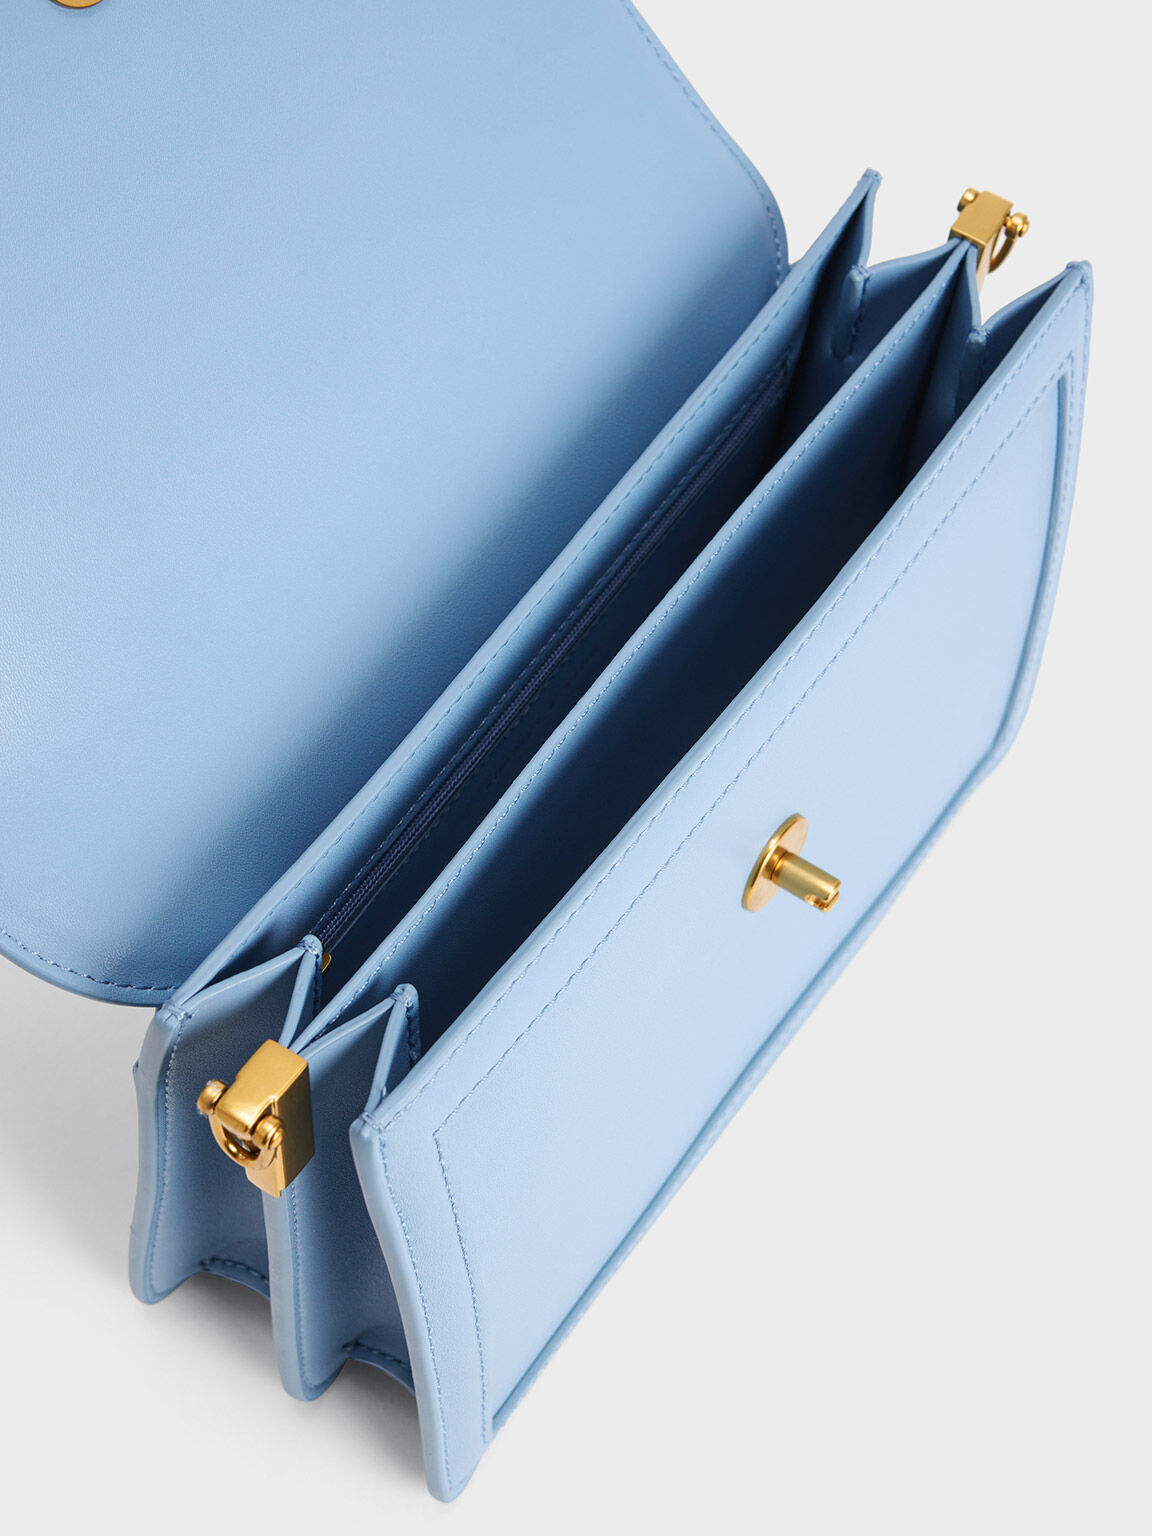 Joelle Envelope Shoulder Bag, Light Blue, hi-res